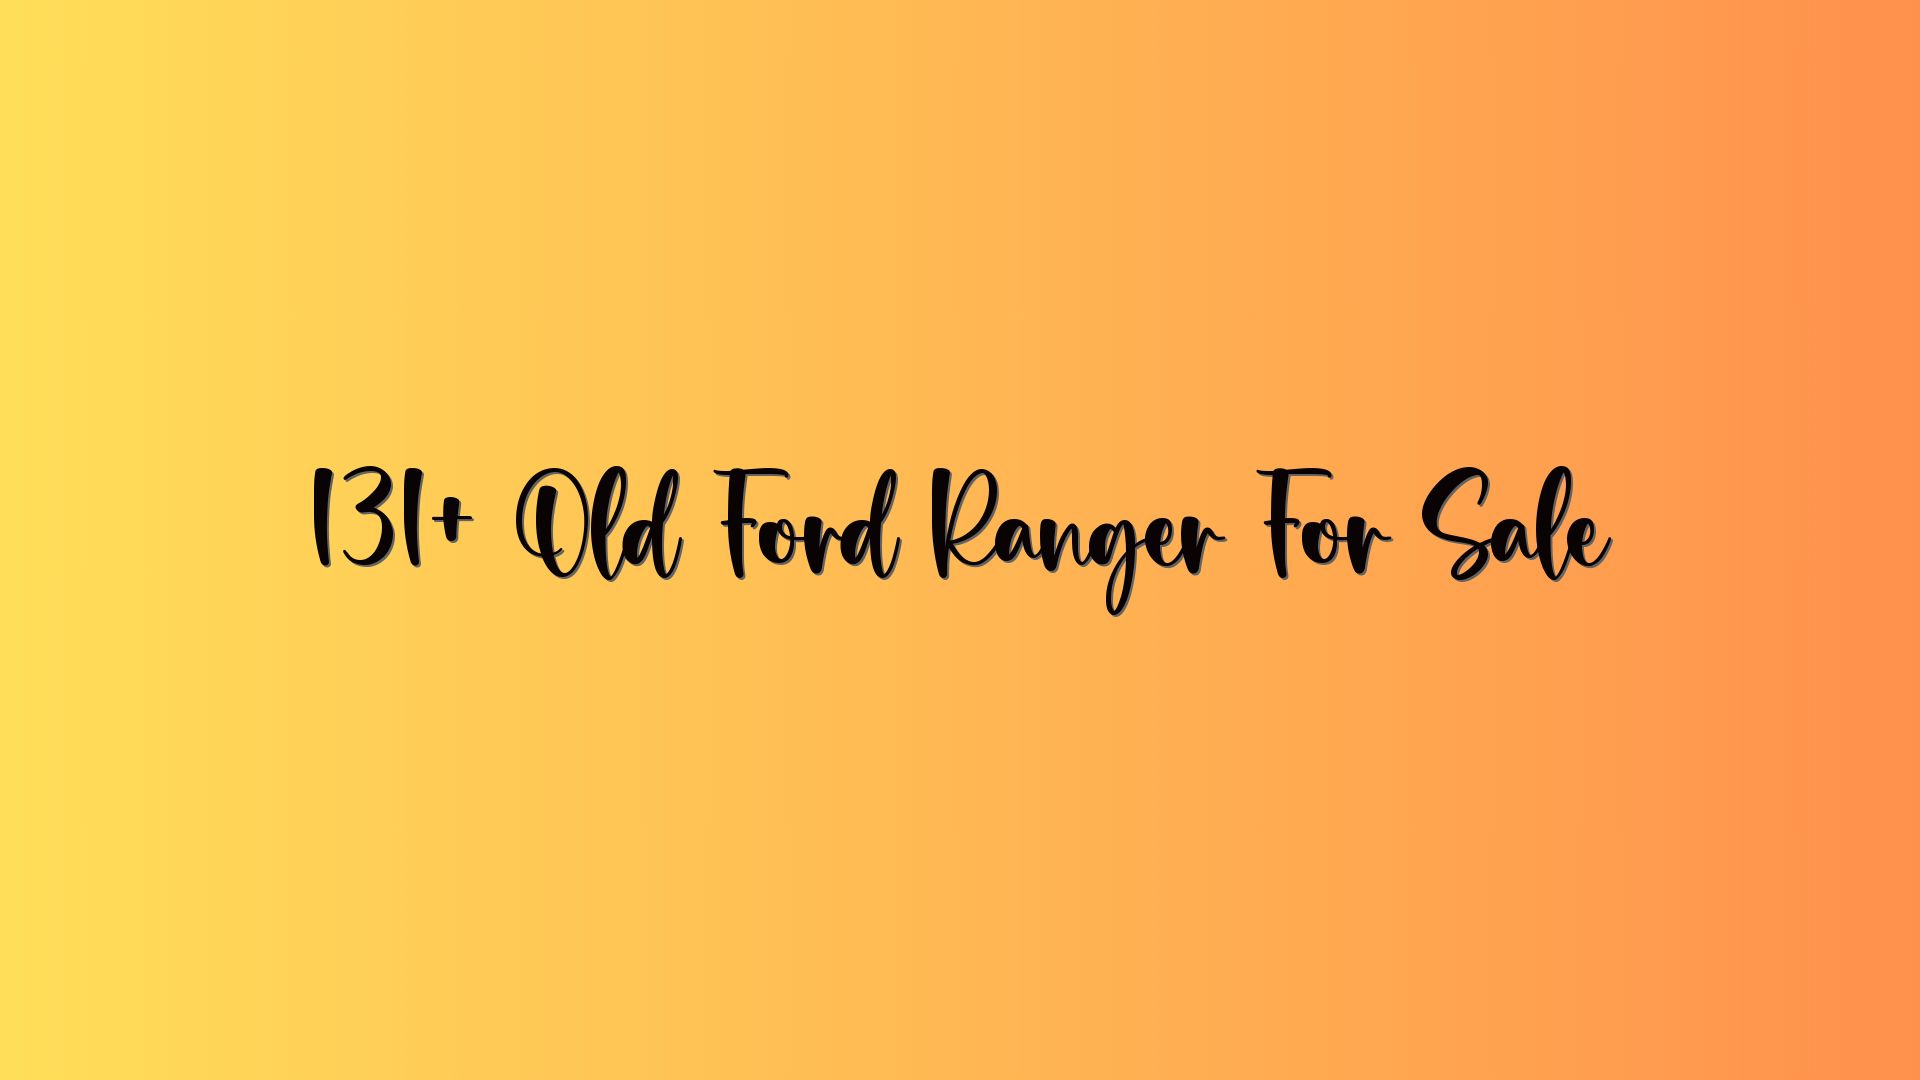 131+ Old Ford Ranger For Sale